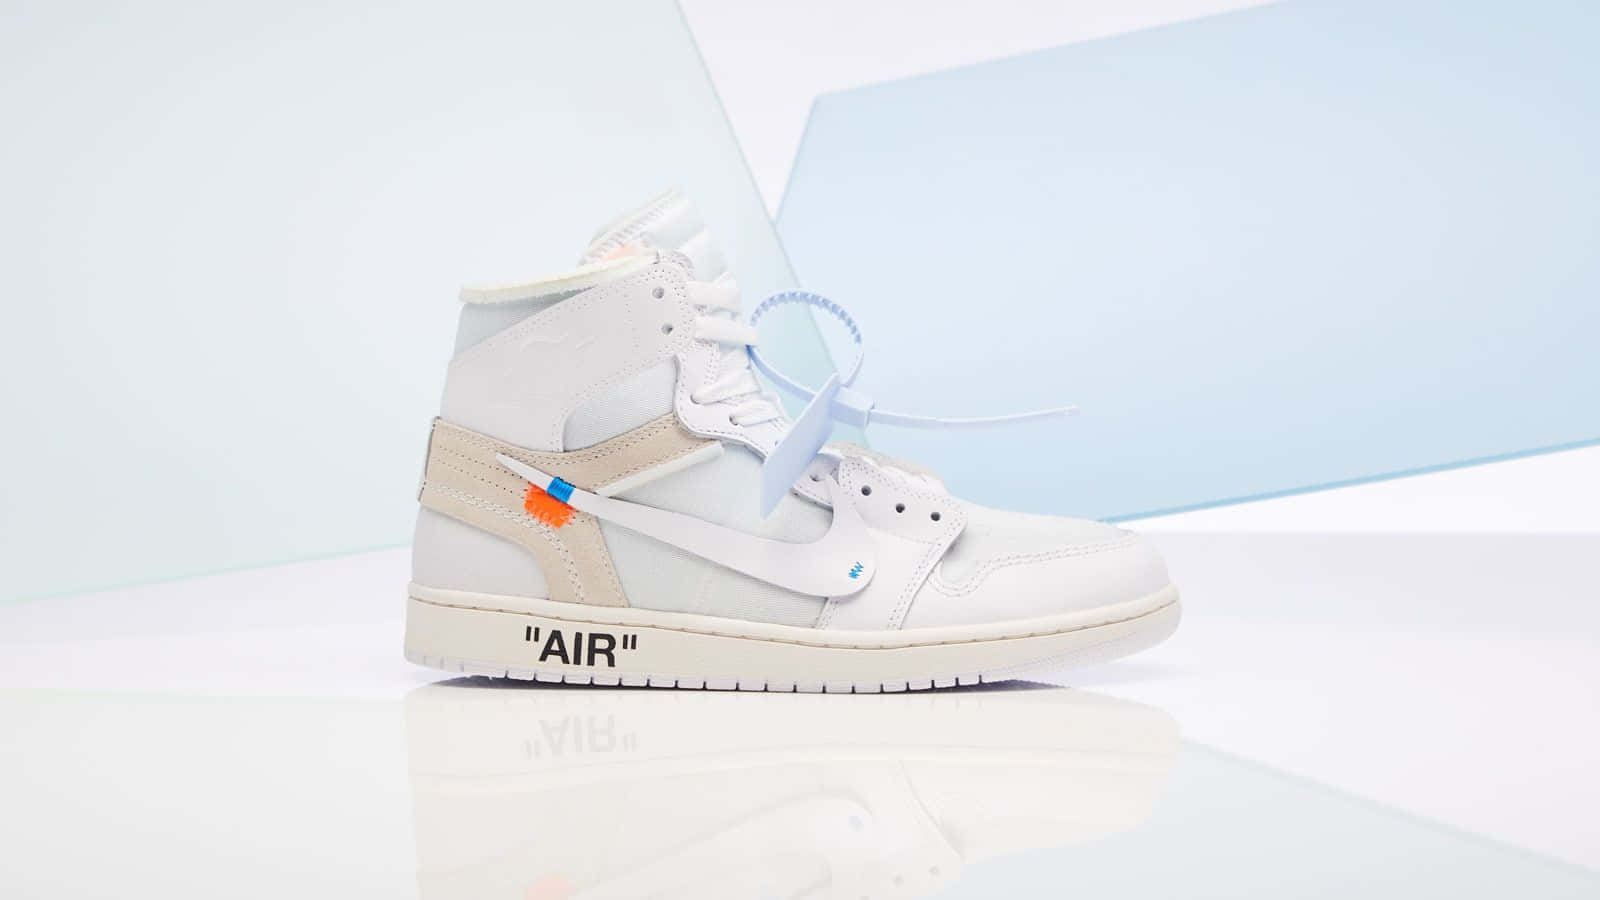 Umtênis Nike Jordan 1 High Branco E Azul Está Sobre Uma Superfície Branca. Papel de Parede